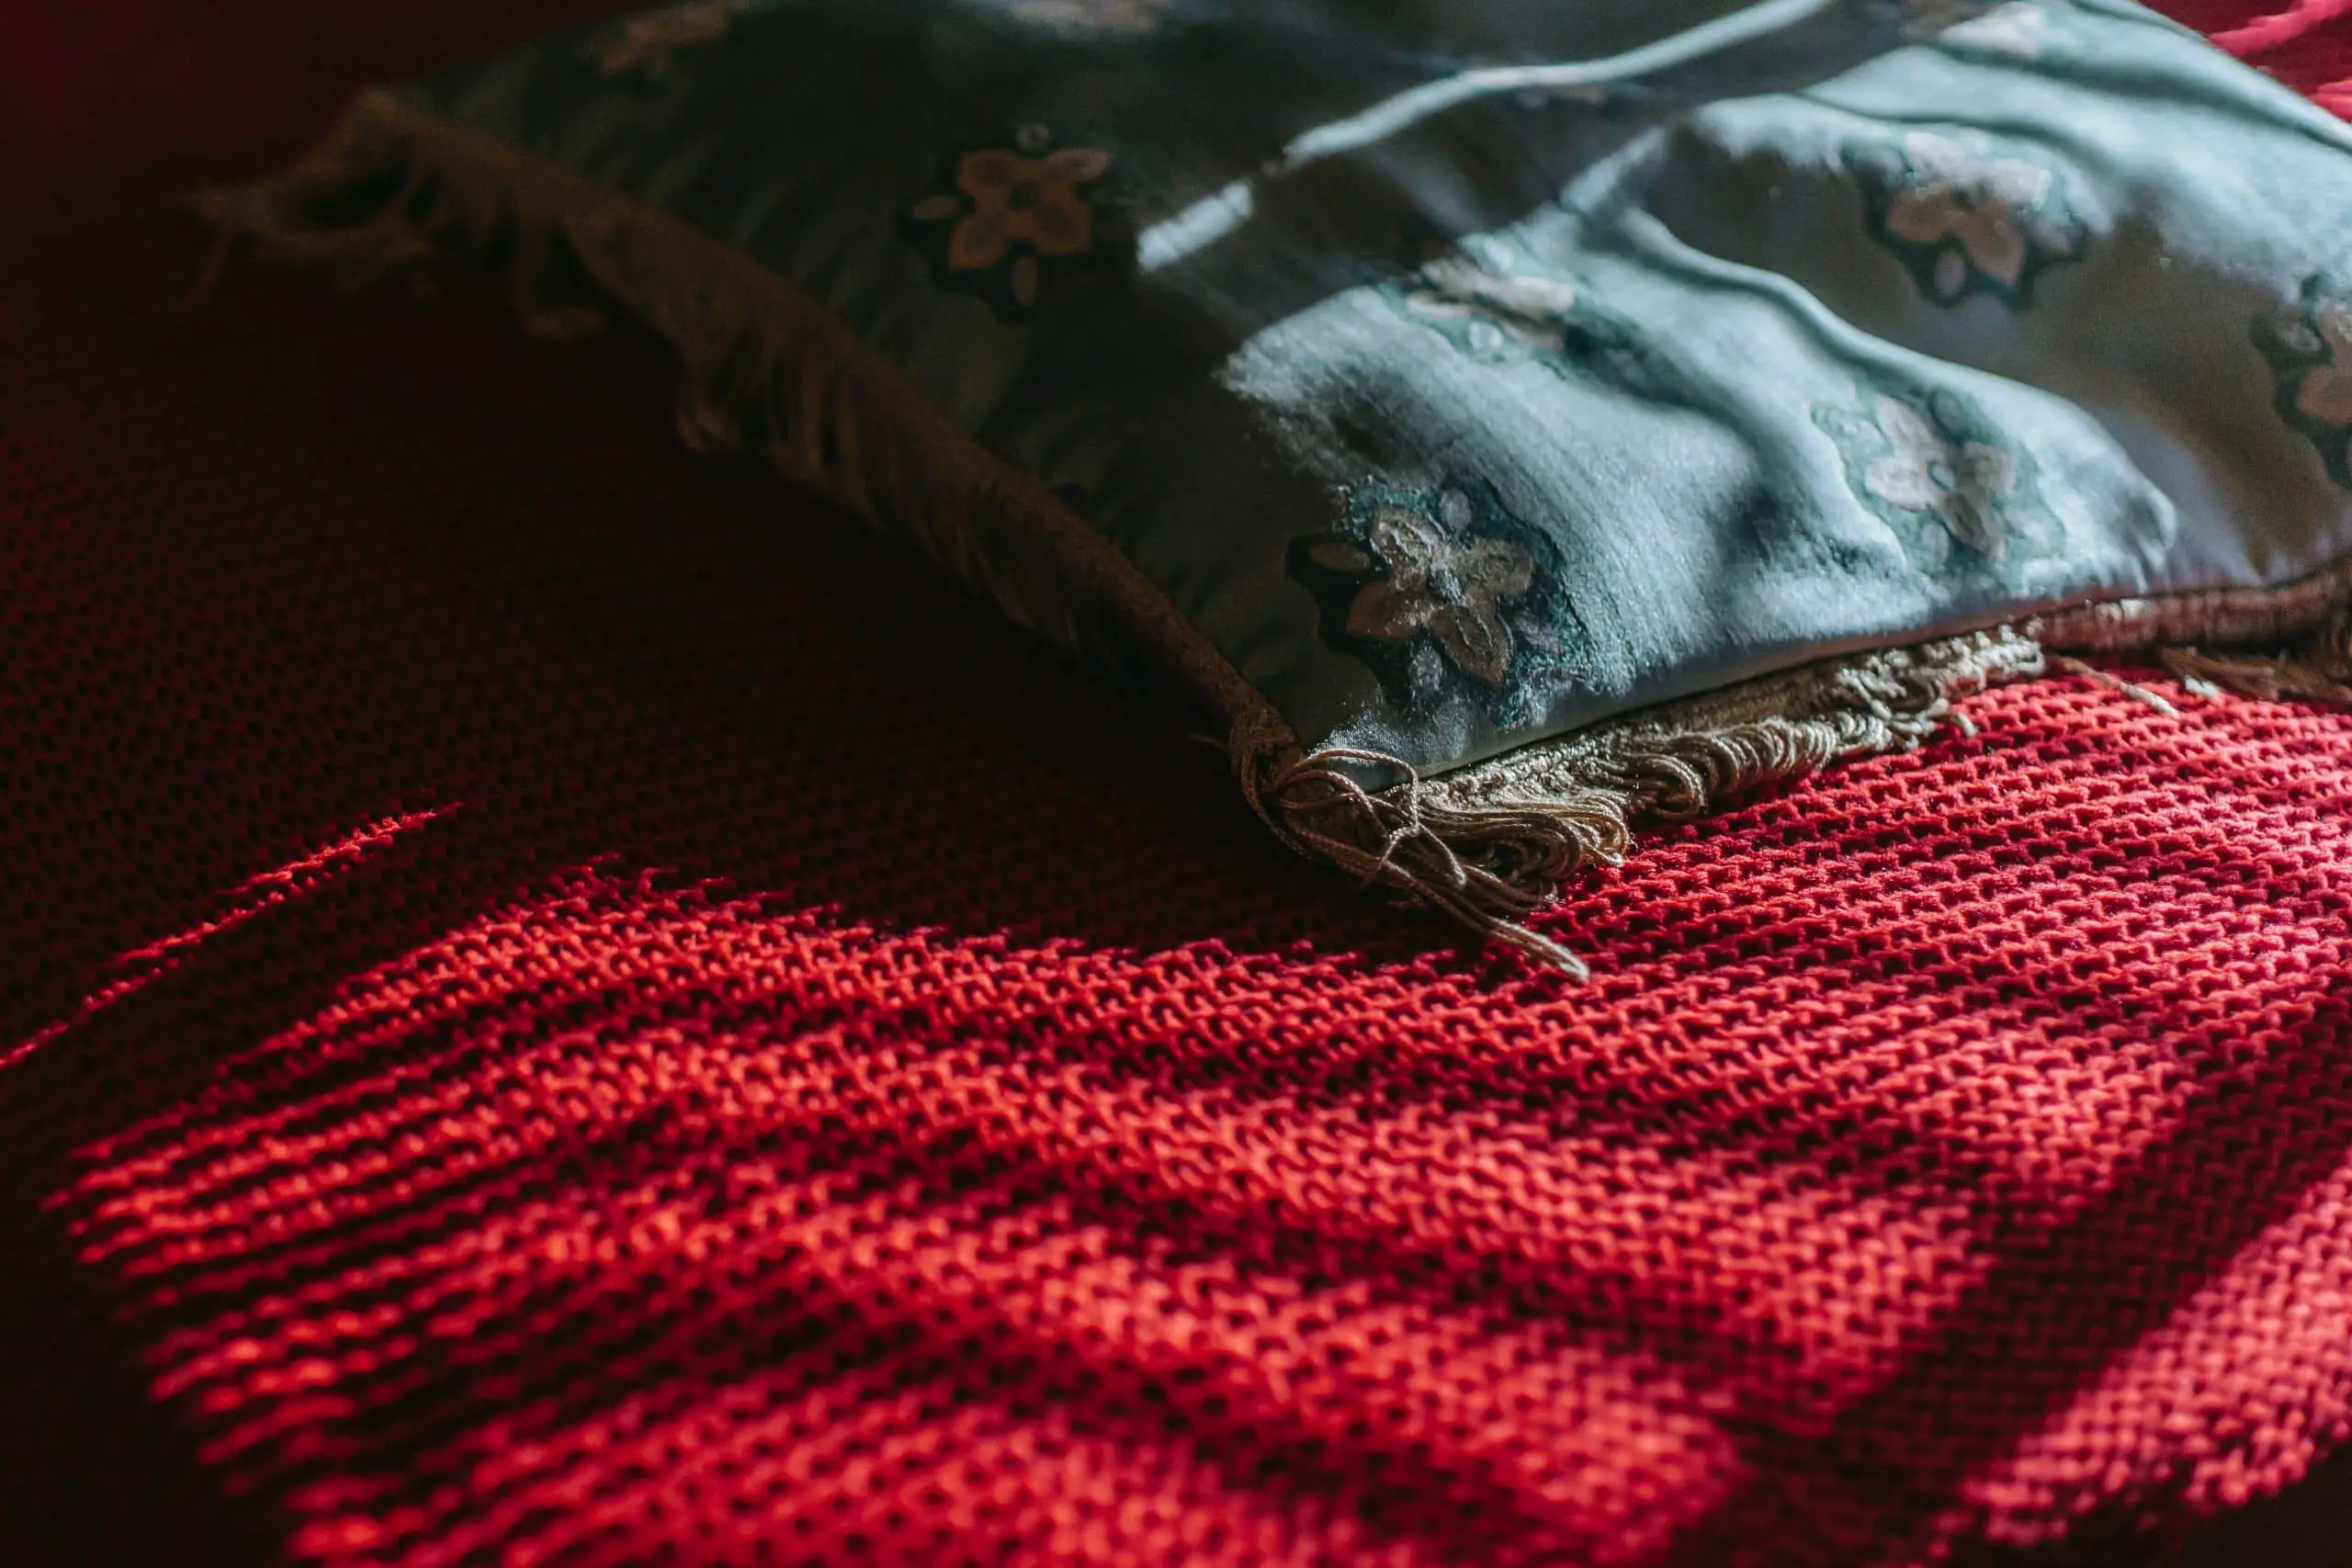 How to wash an acrylic yarn blanket?